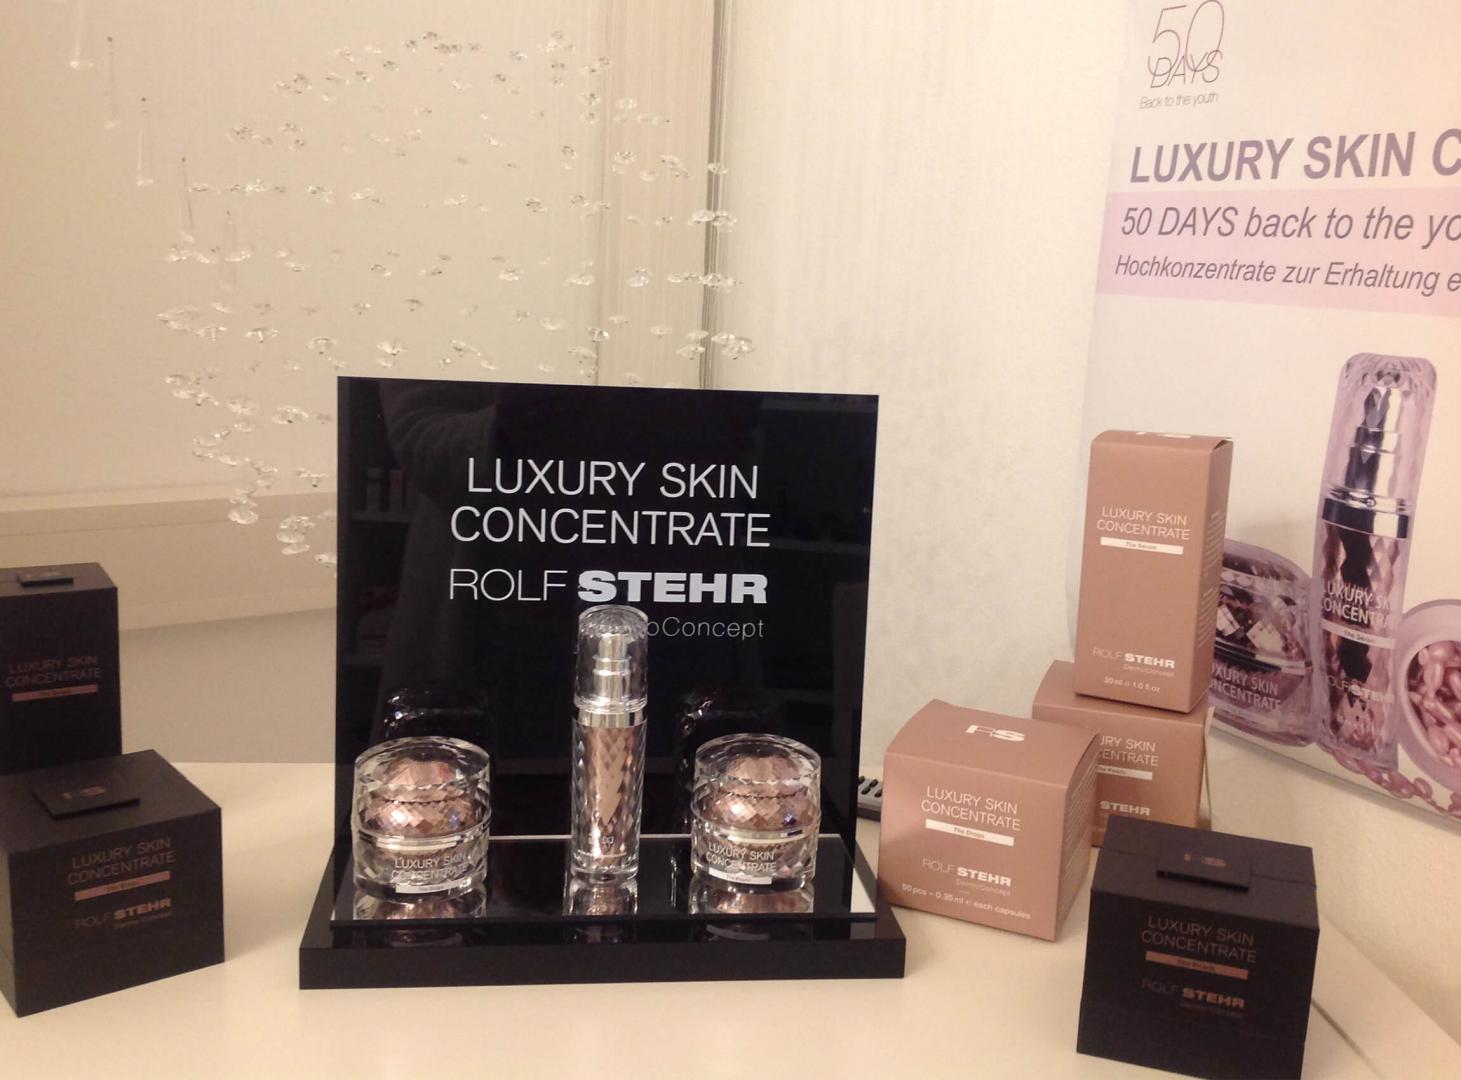 Eine große Auswahl an Produkten für Luxury Skin Concentrate